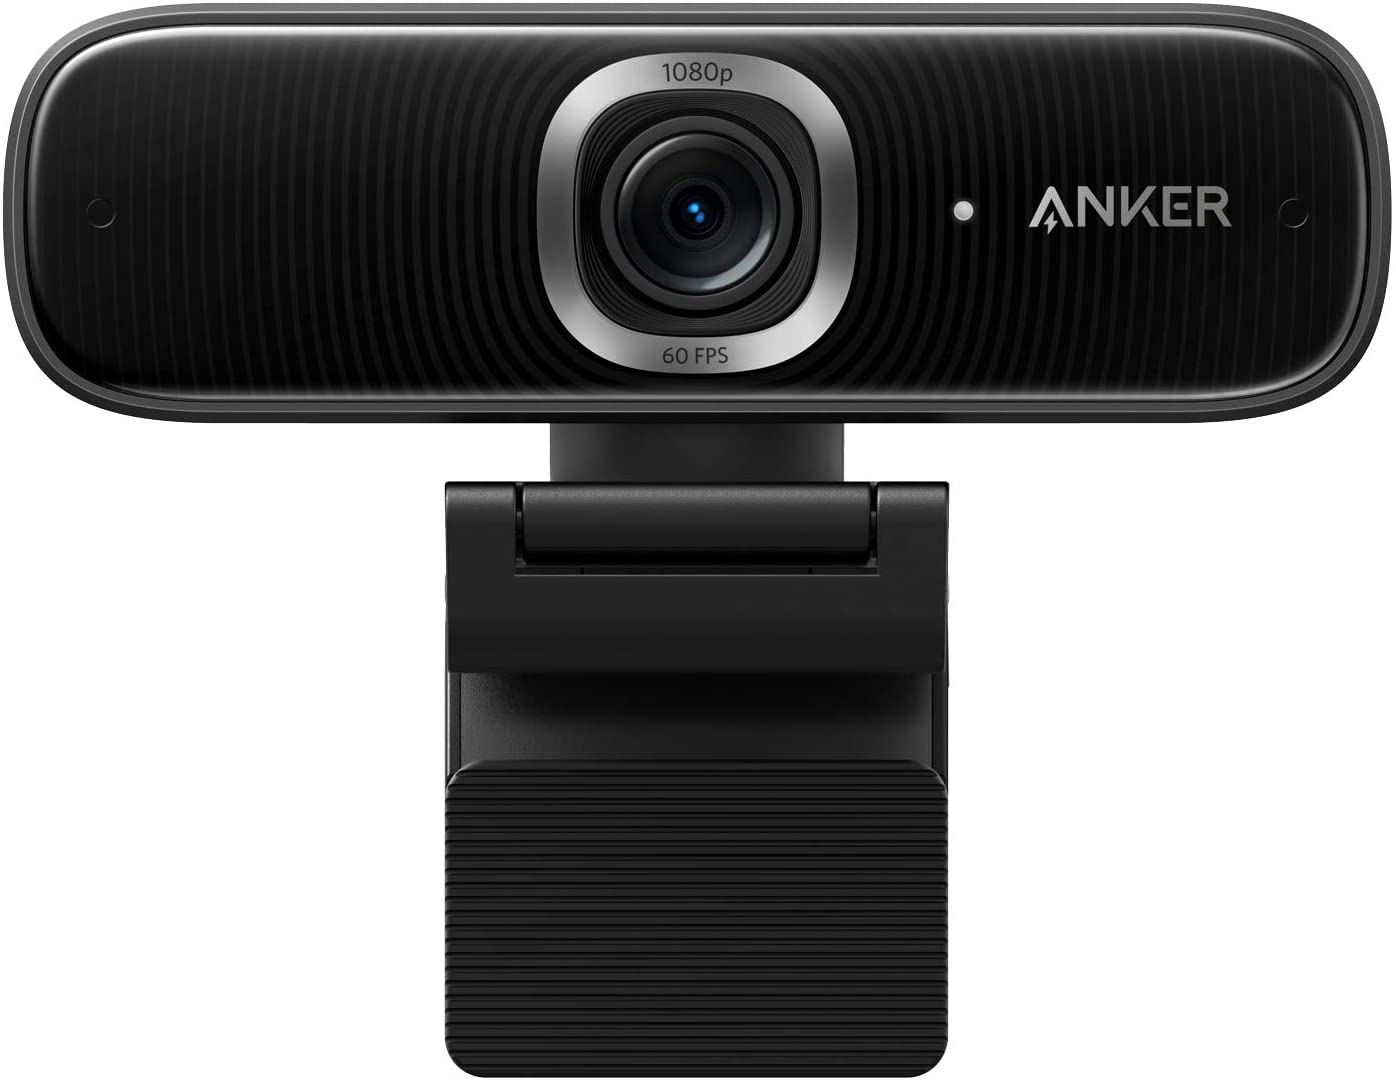 Anker stellt neue Homeoffice Webcam vor